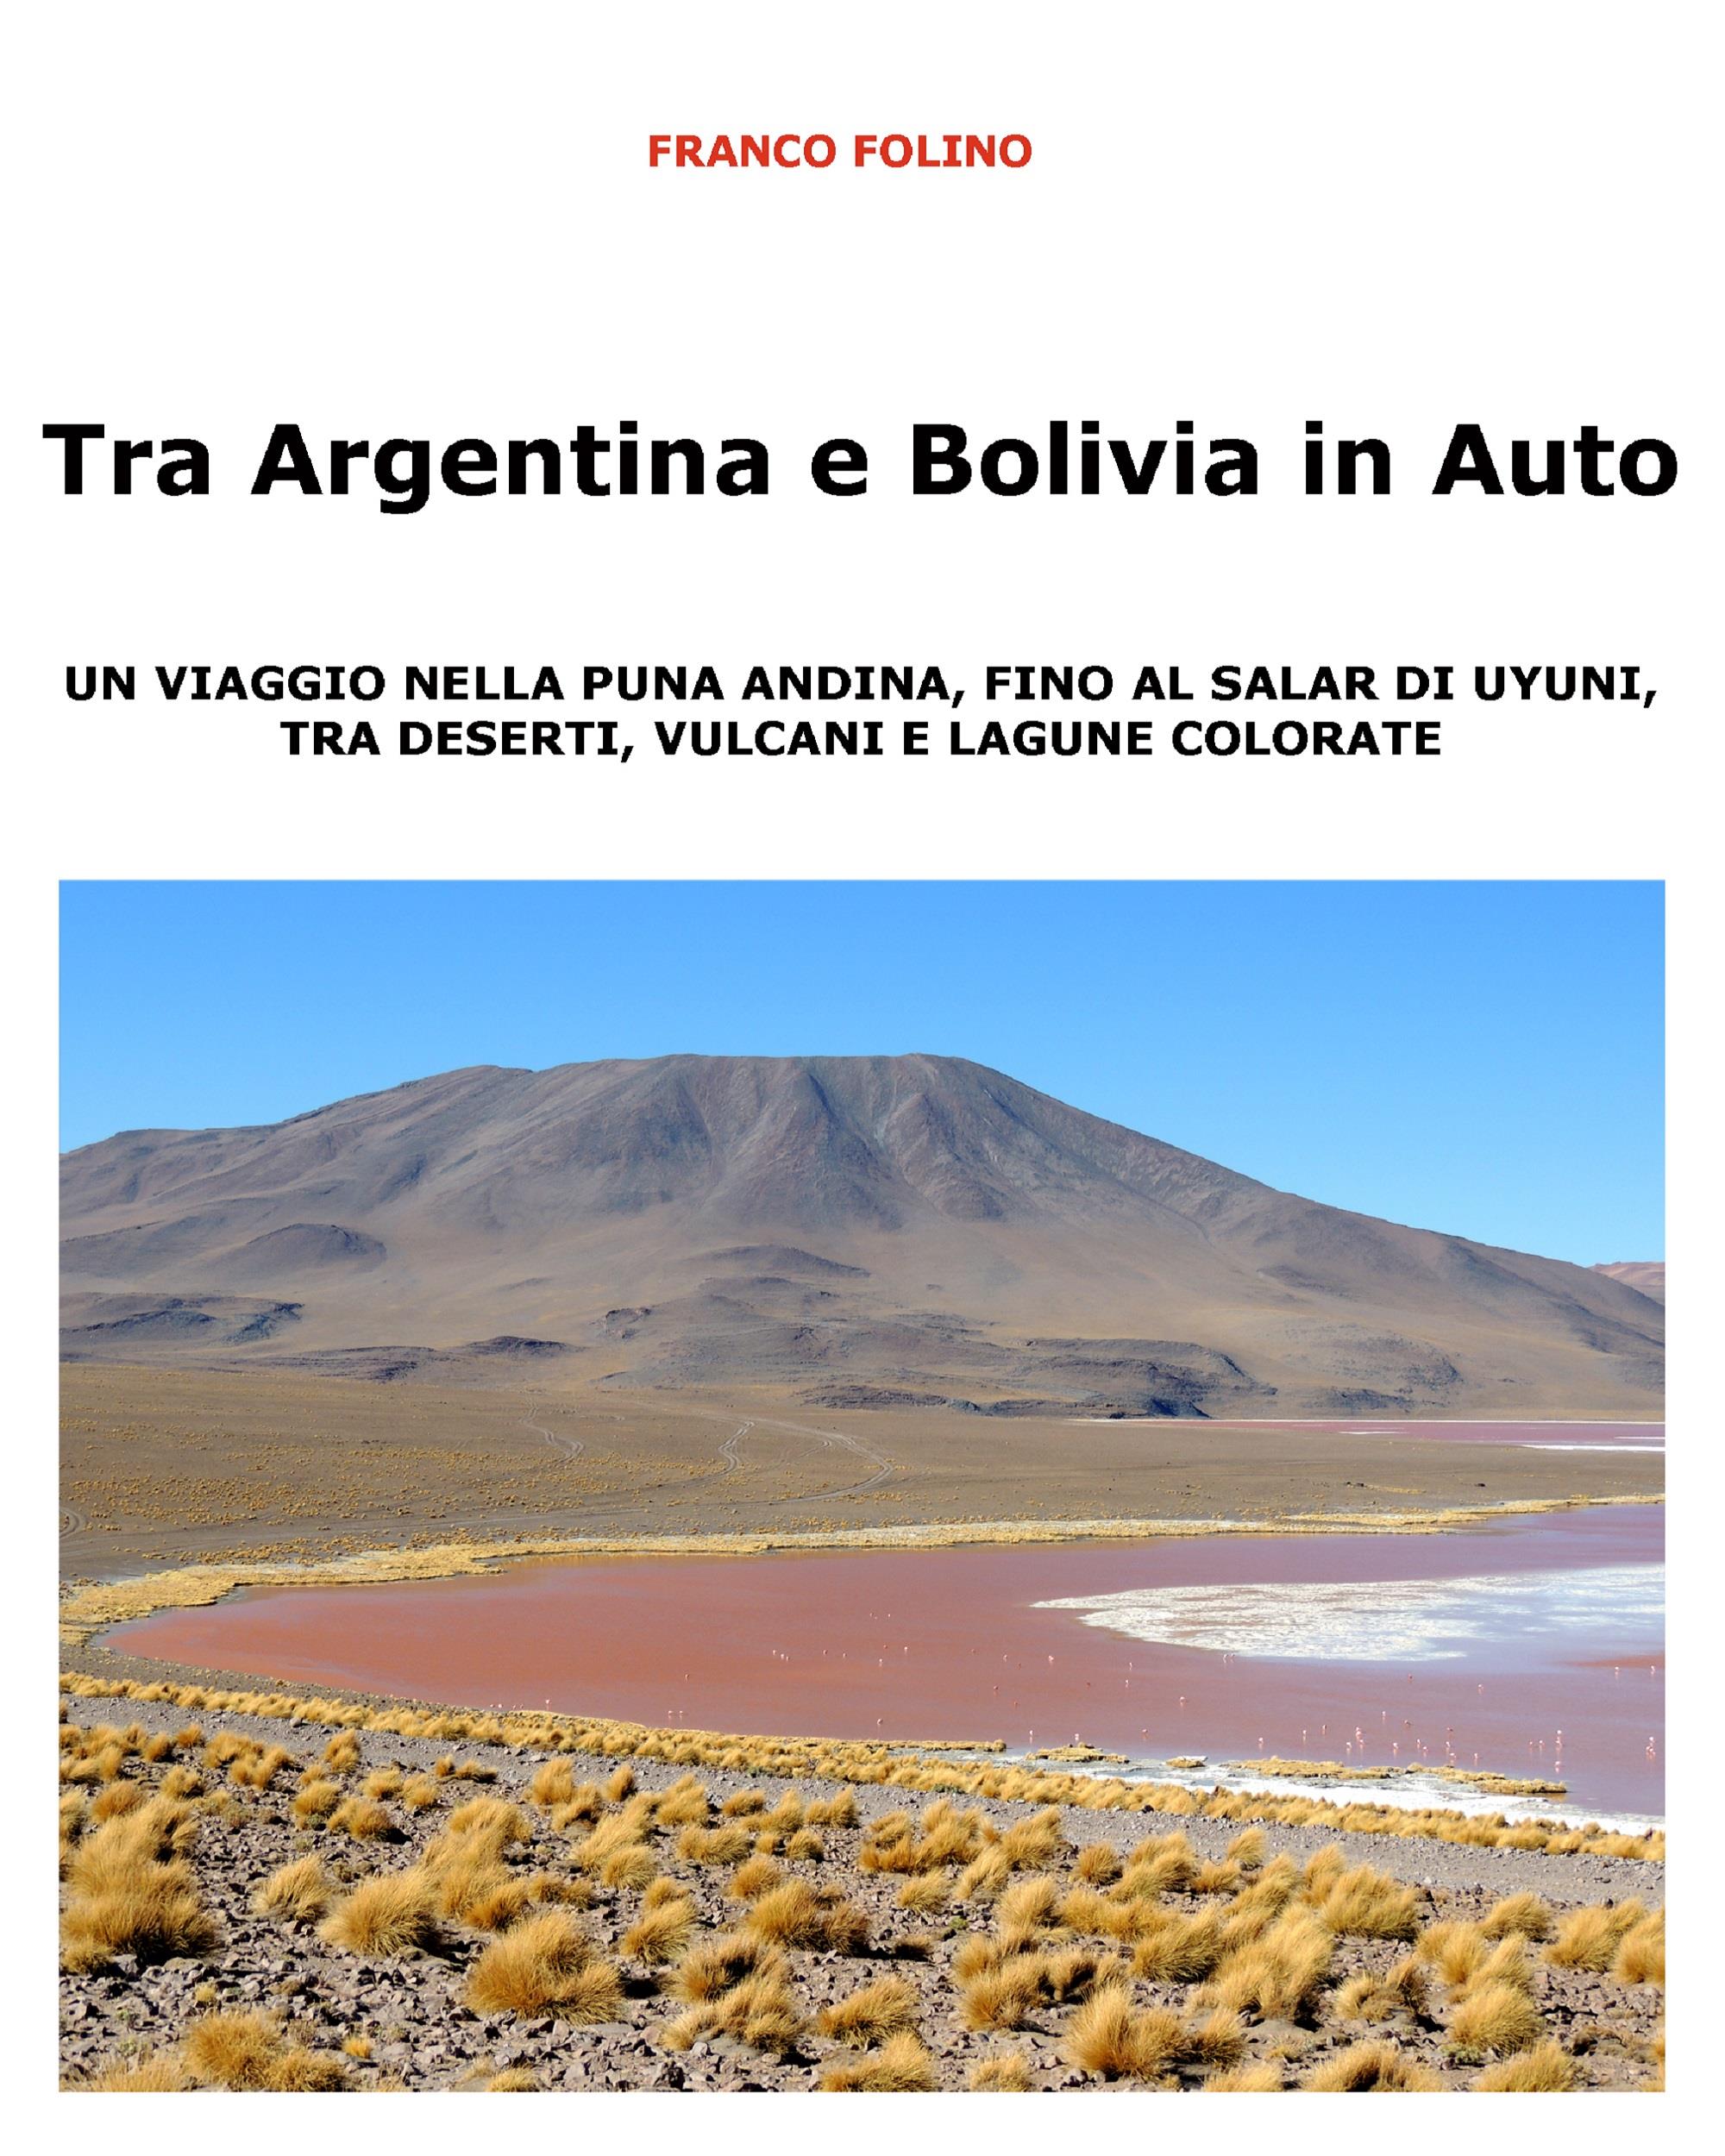 Tra Argentina e Bolivia in Auto  Un viaggio nella Puna andina, fino al salar di Uyuni, tra deserti, vulcani  e lagune colorate